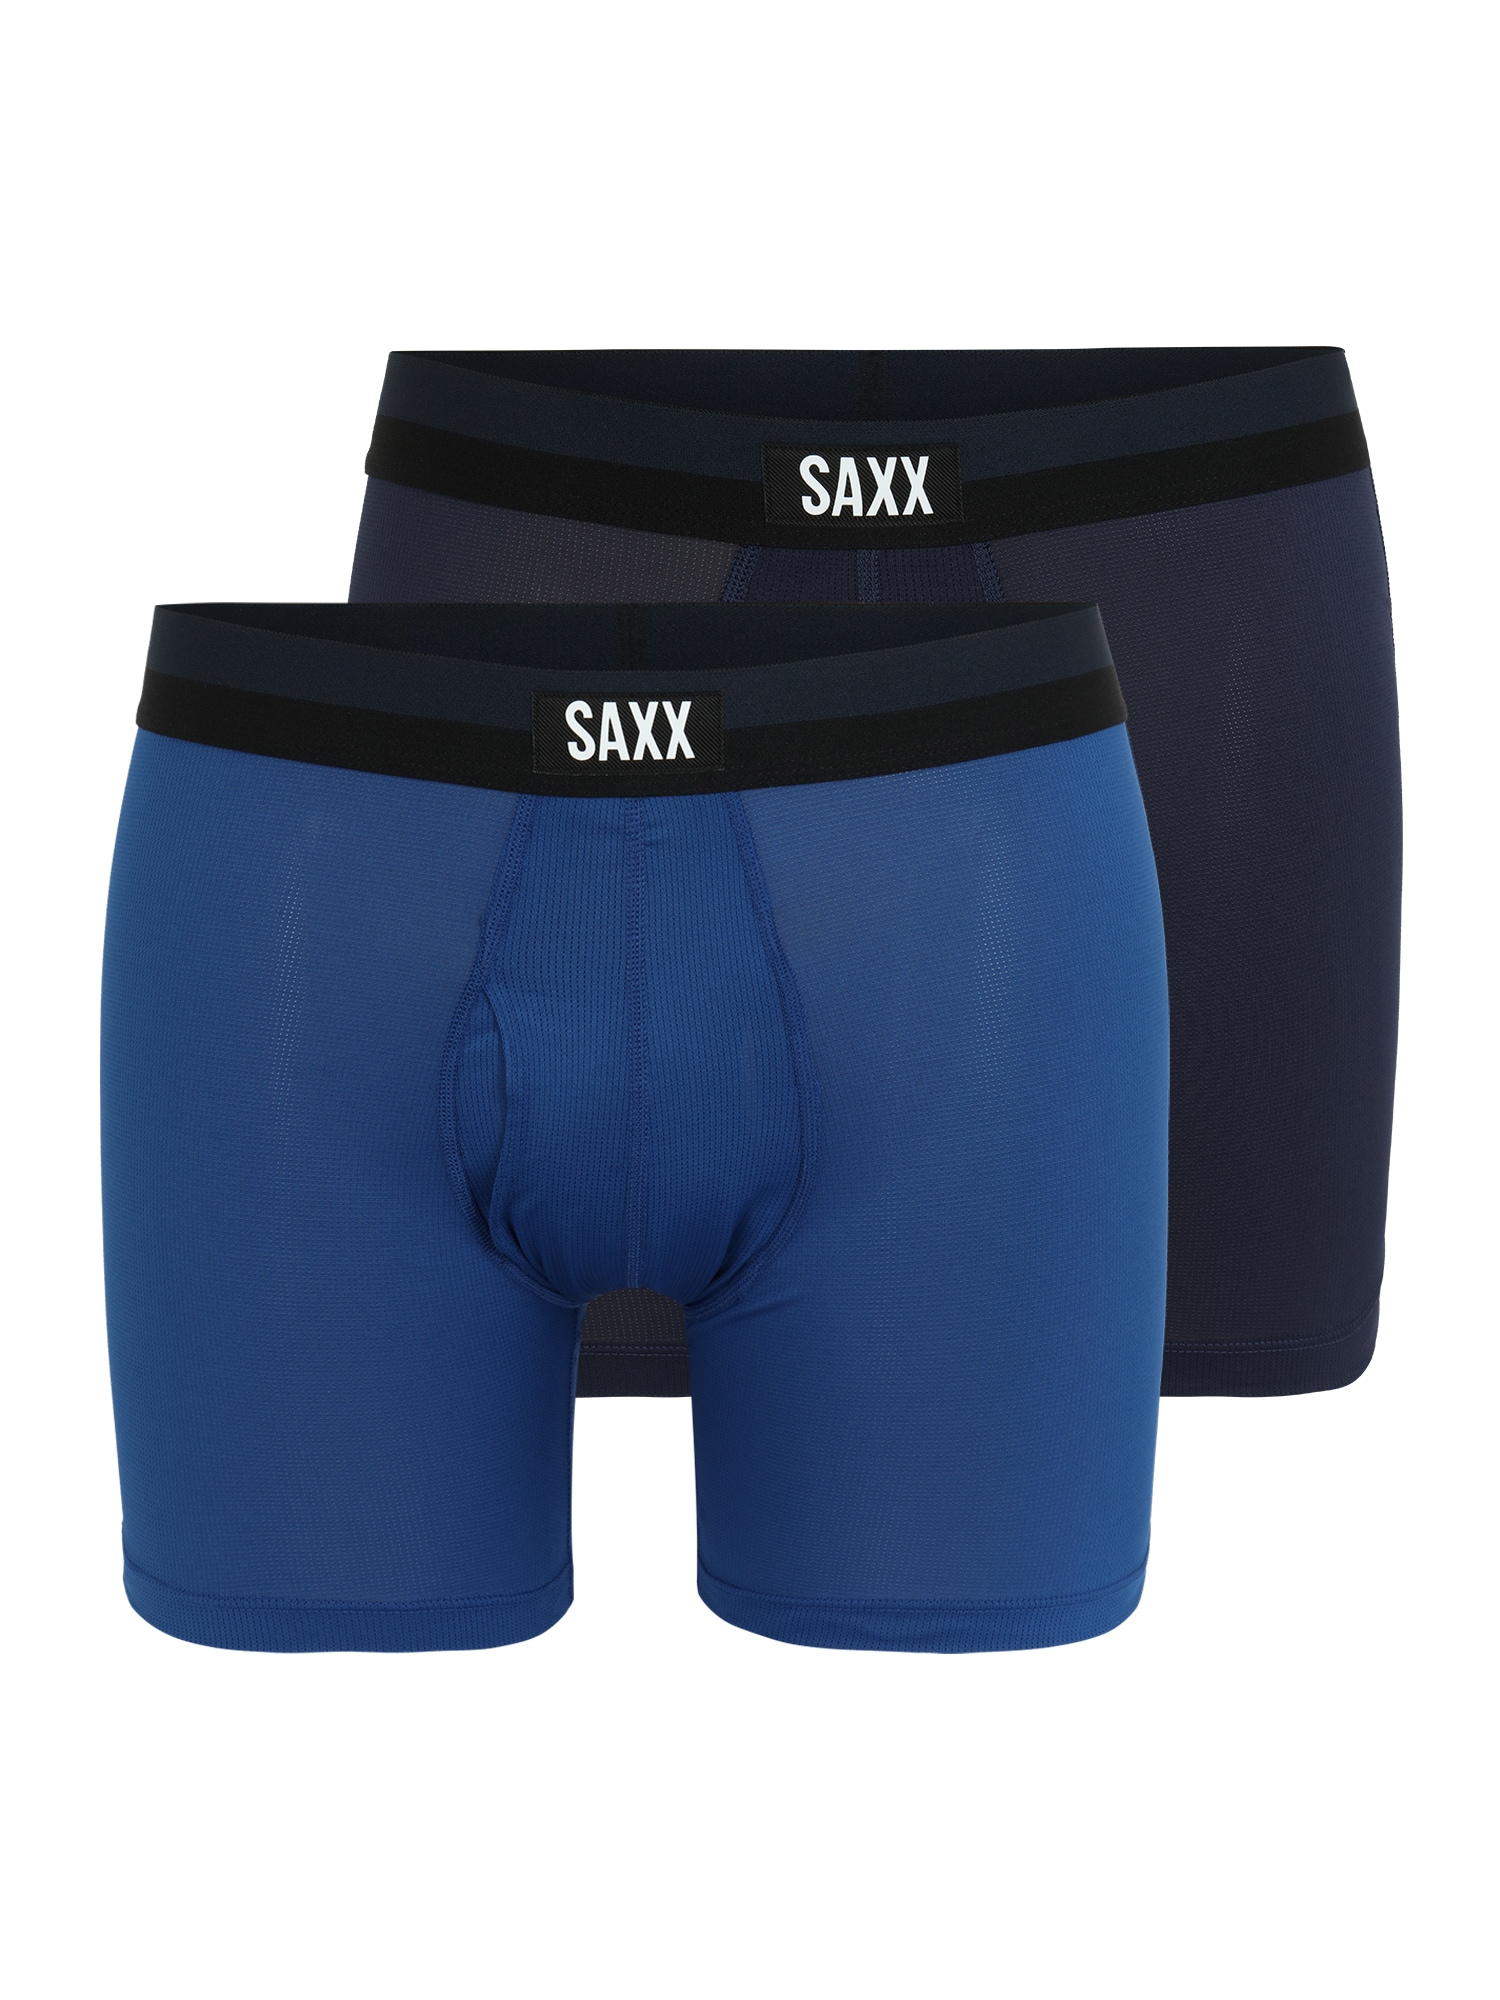 SAXX Sportinės trumpikės tamsiai mėlyna jūros spalva / tamsiai mėlyna